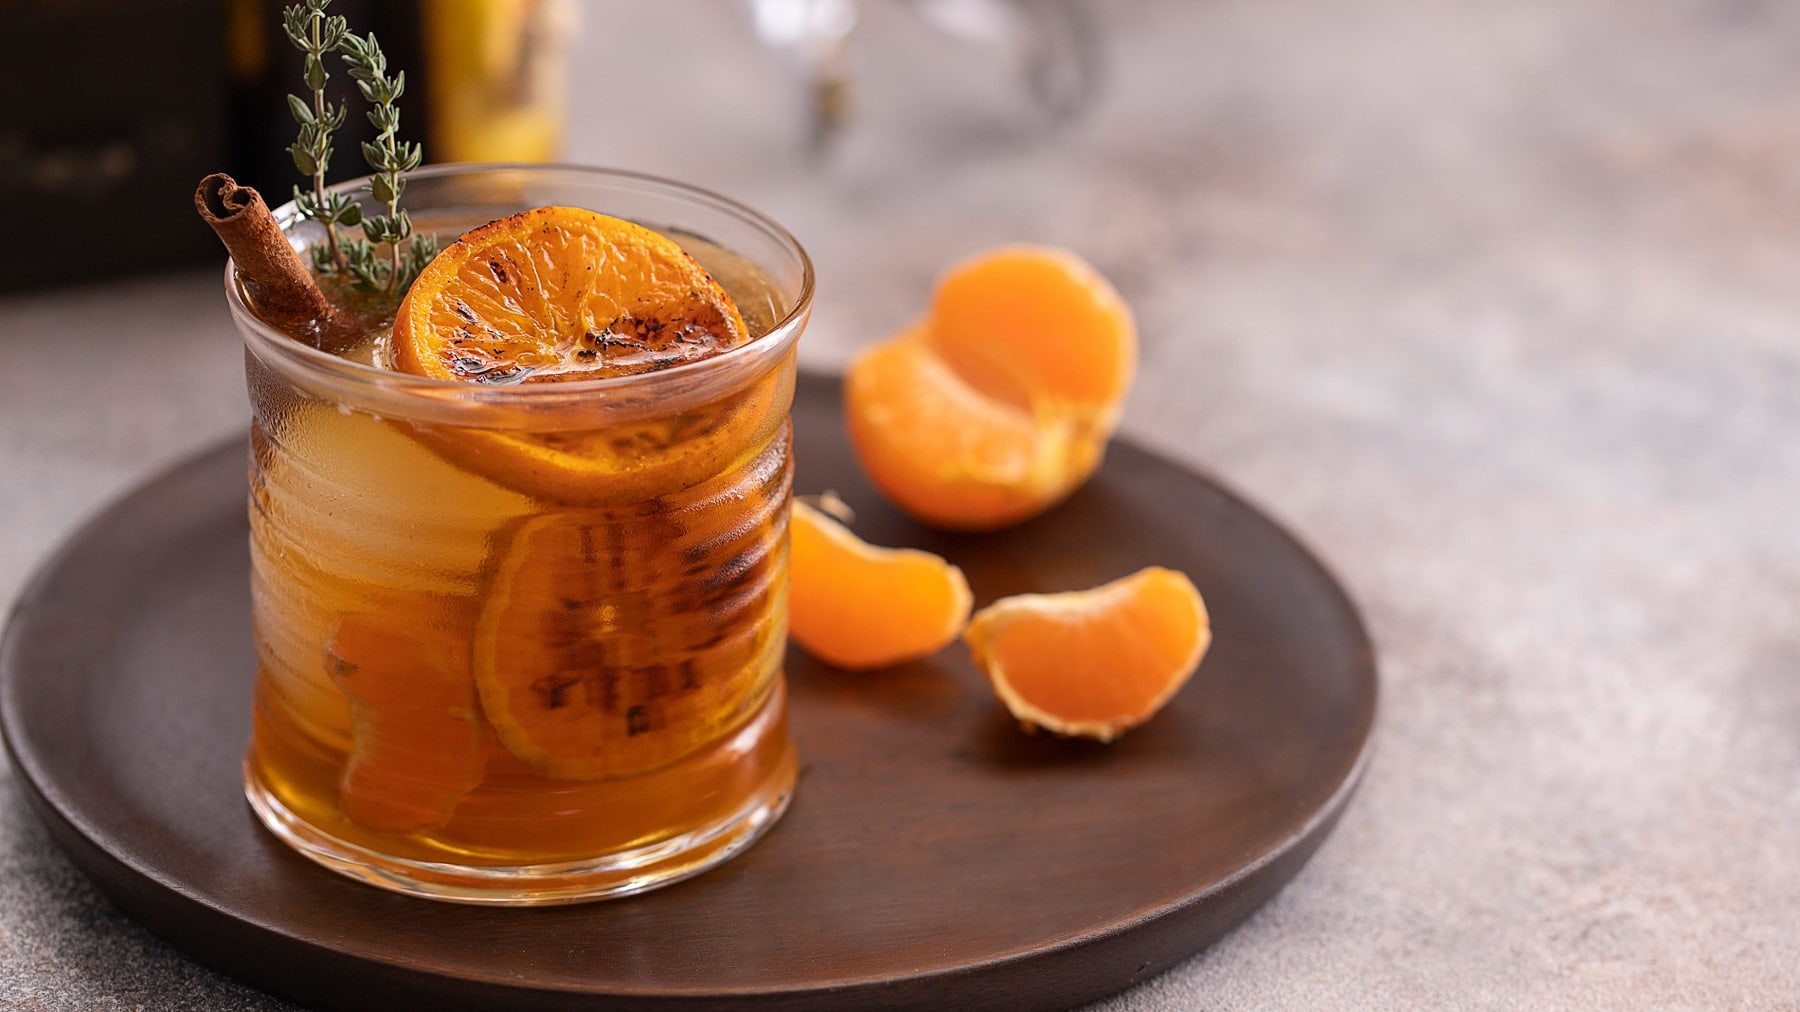 Ein Glas mit dem Drink auf einem braunen Teller mit Mandarinenstückchen.